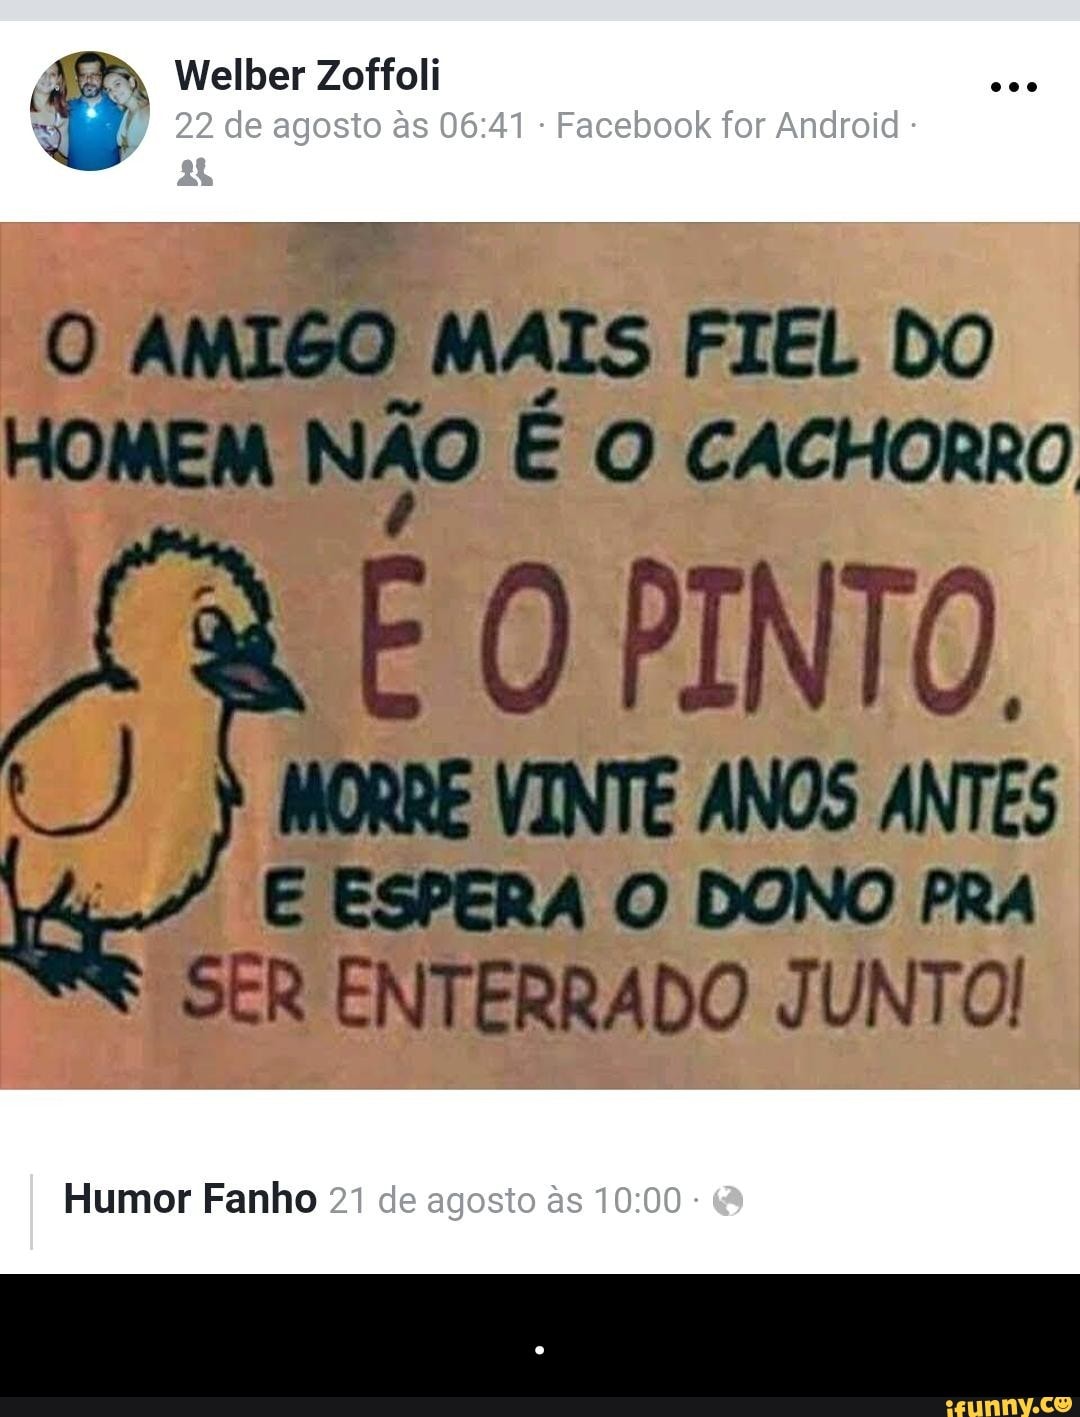 Humor Fanho